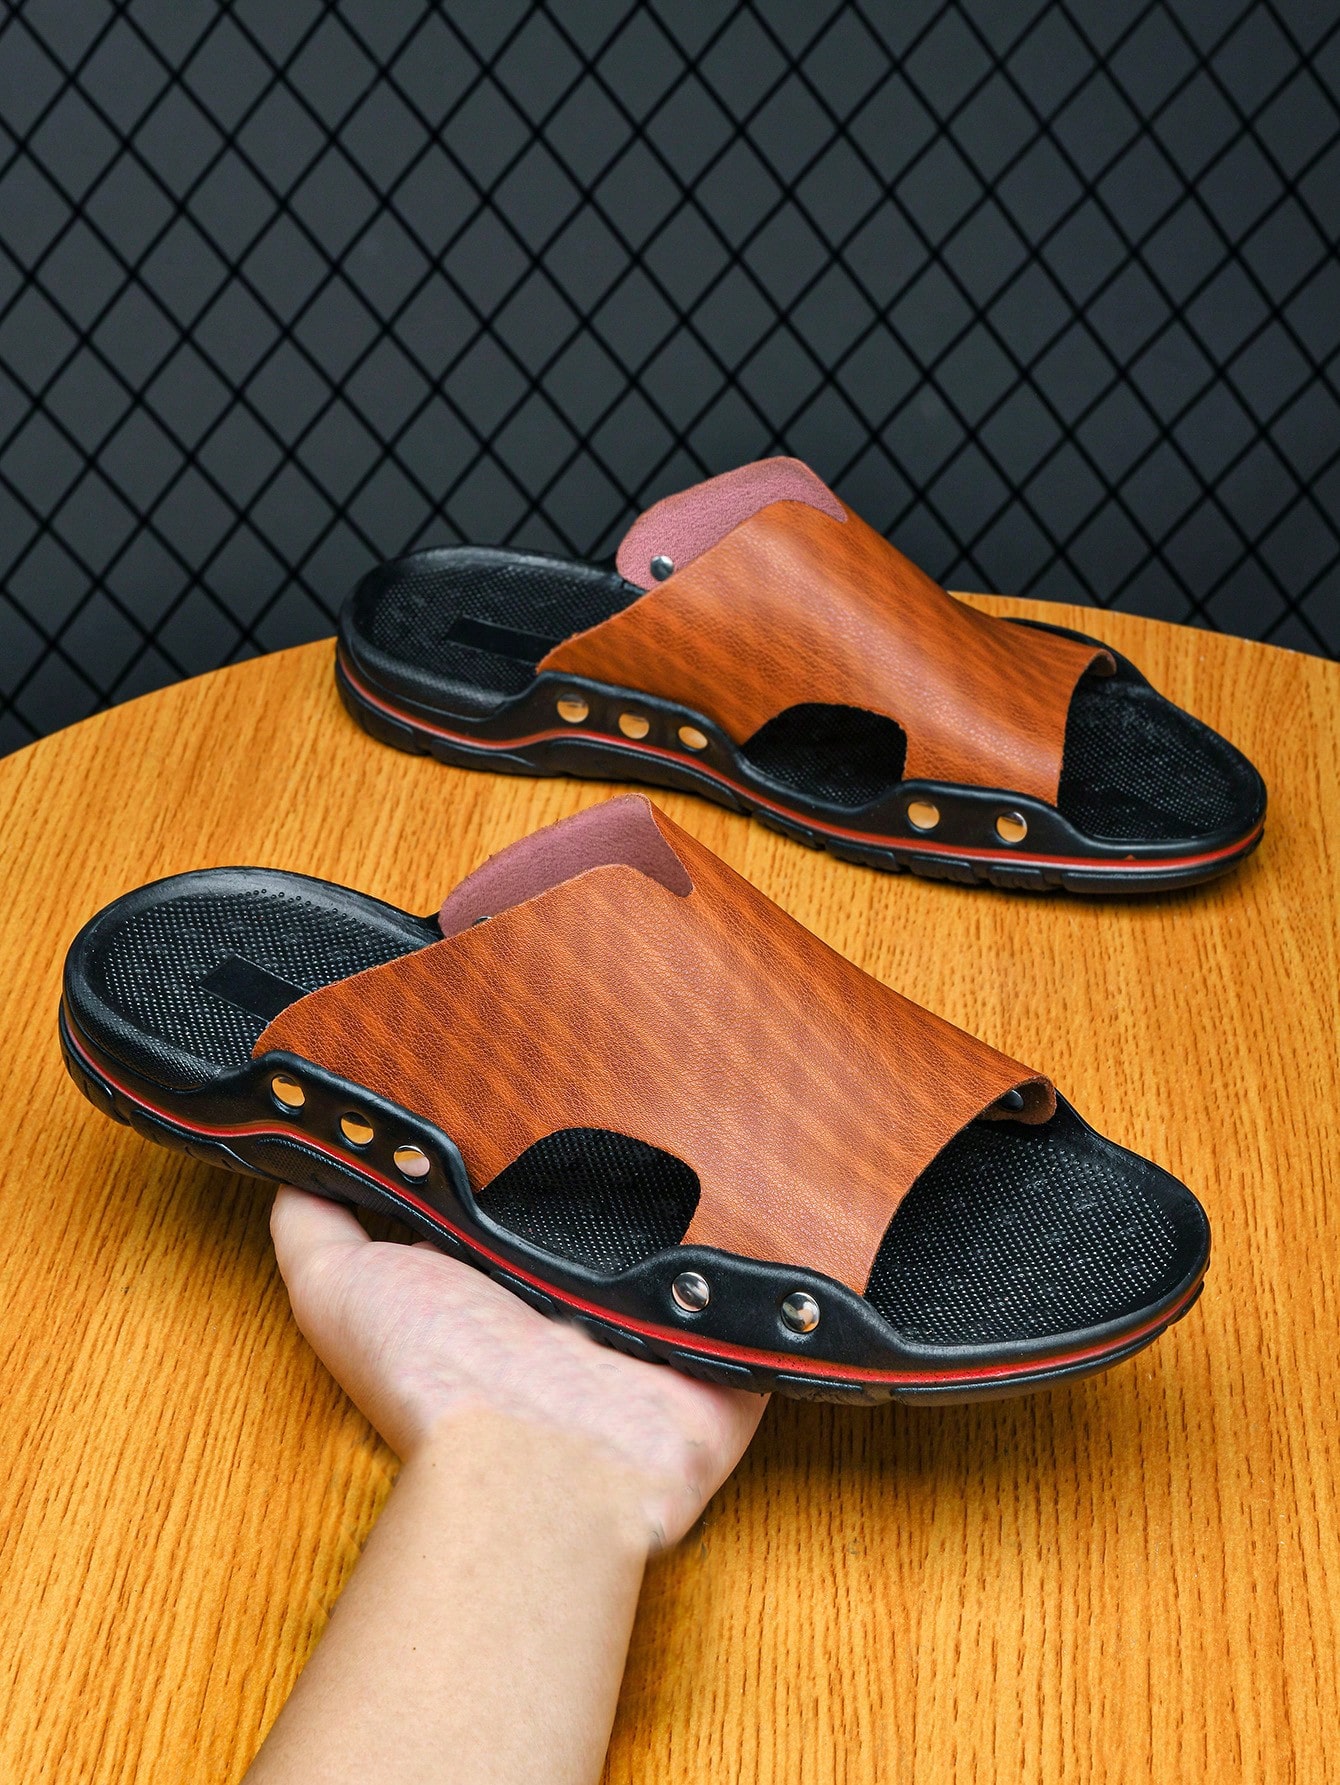 Мужские сандалии-тапочки, коричневый сандалии мужские кожаные пляжные тапочки повседневная обувь на плоской подошве уличная пляжная обувь большой размер 45 лето 2021